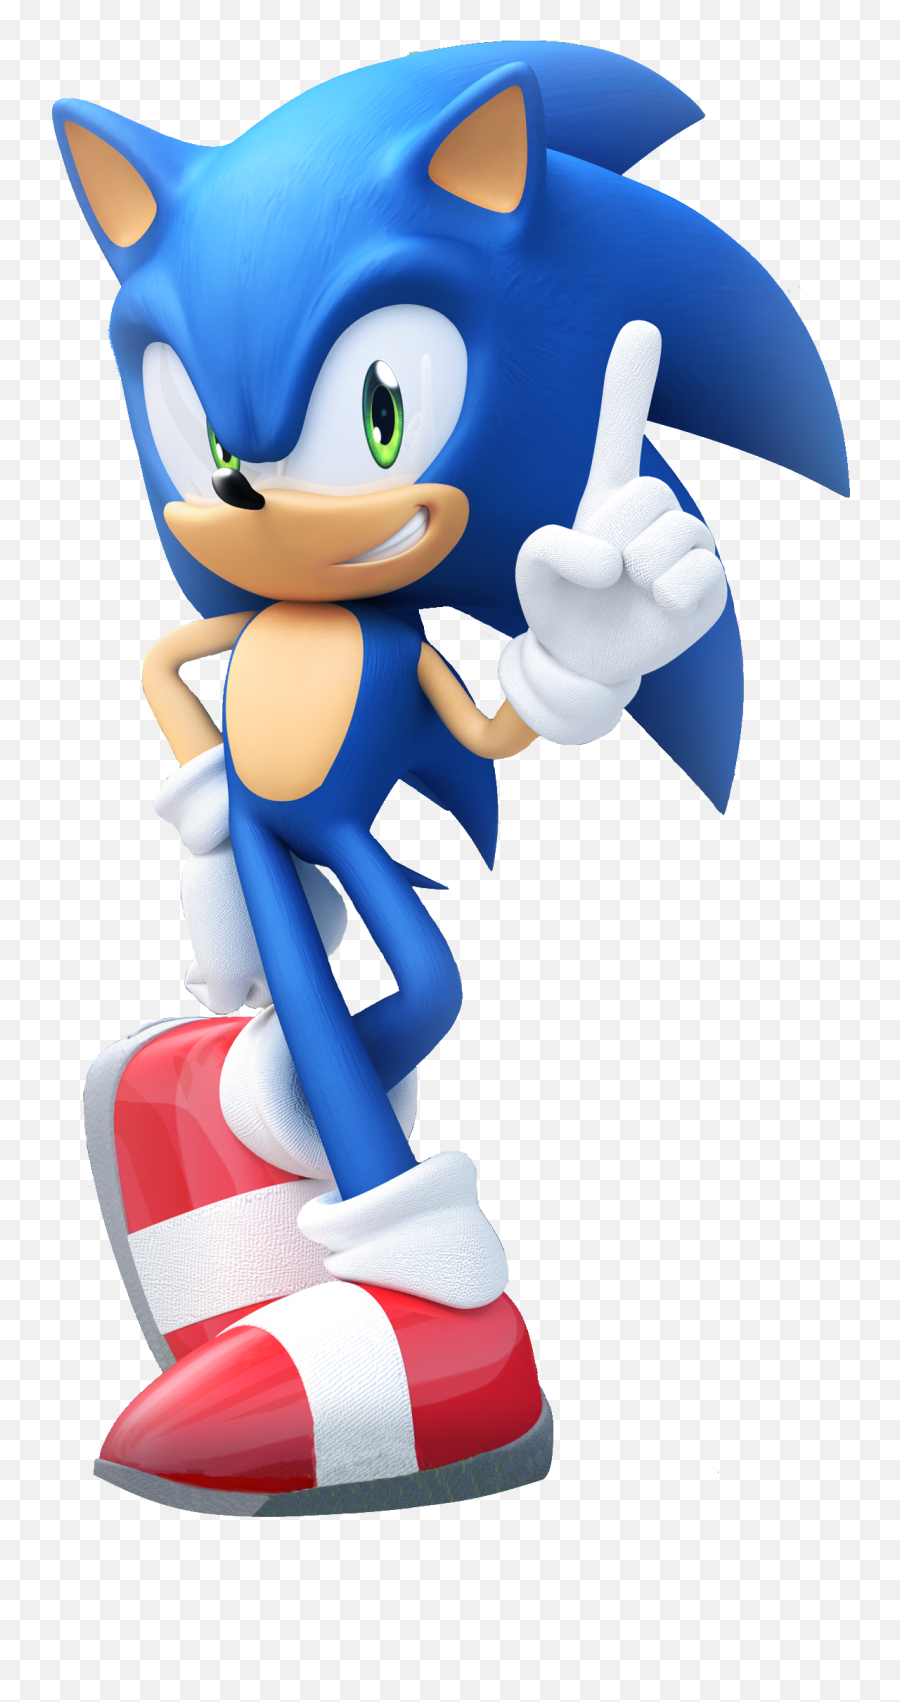 Sonic The Hedgehog Emoji,Tumblr Sonic The Hedgehog Extreme Emotion